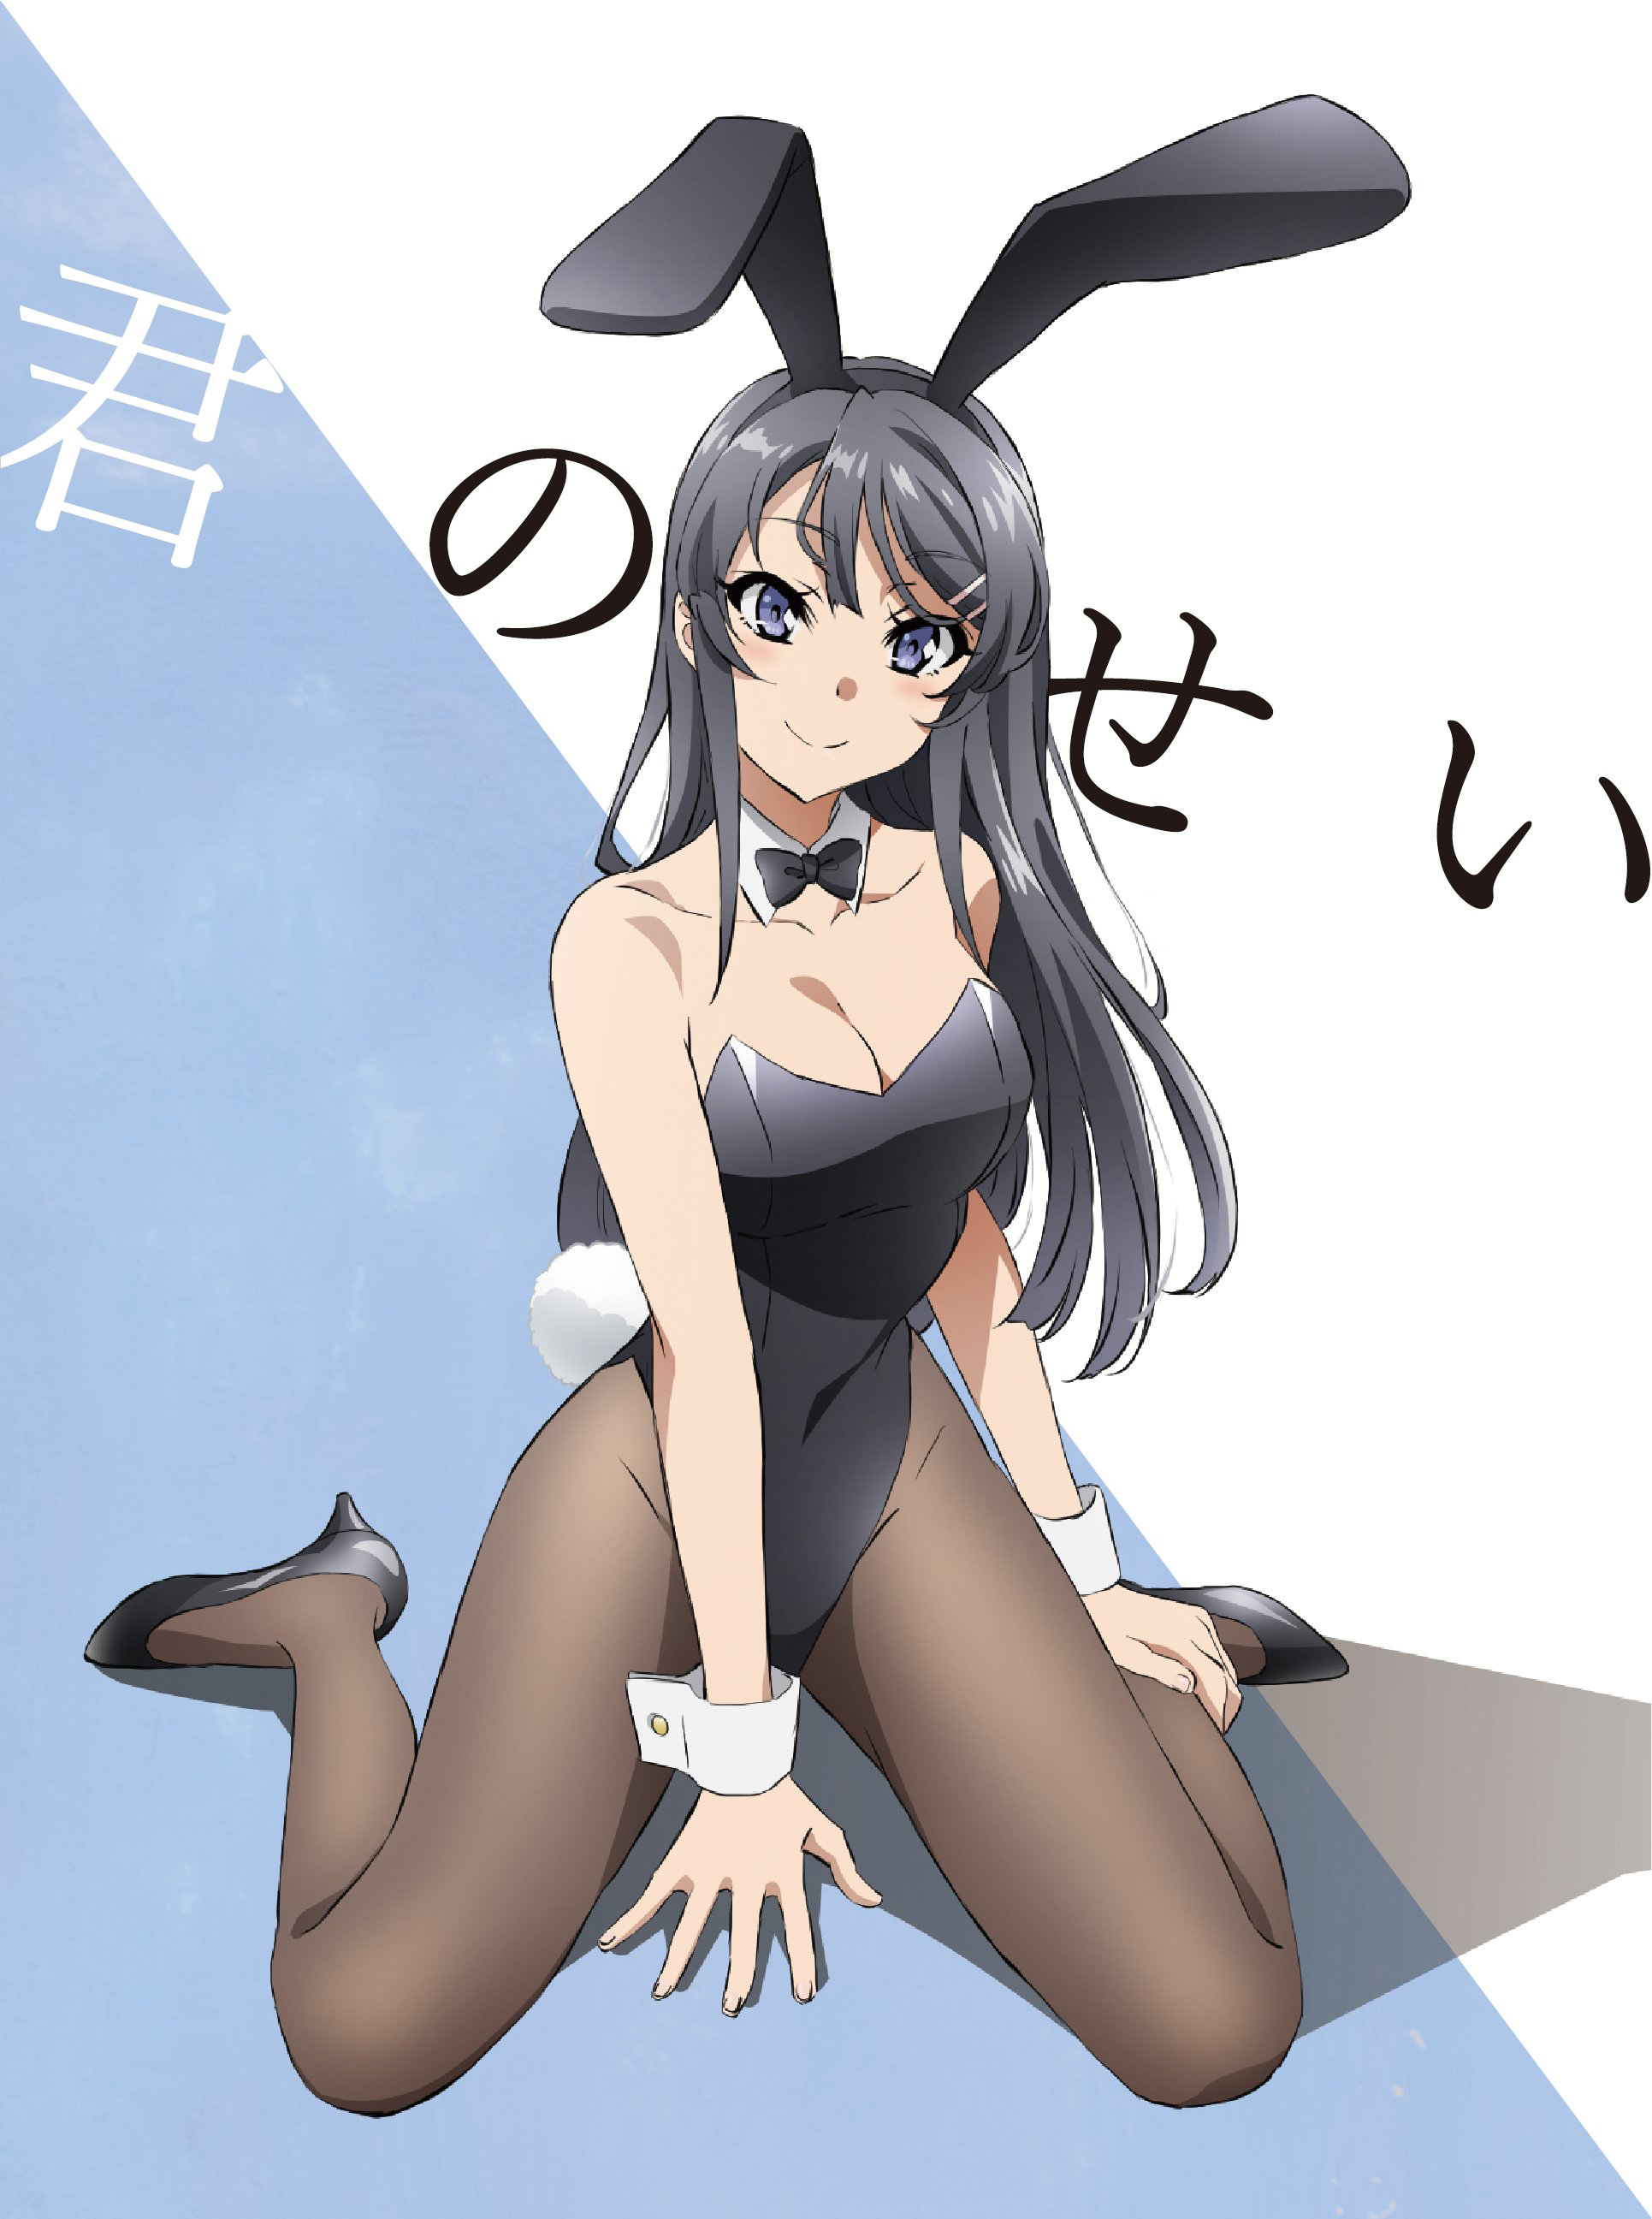 Anime DVD Seishun Buta Yarou wa Bunny Girl Senpai no Yume wo Minai